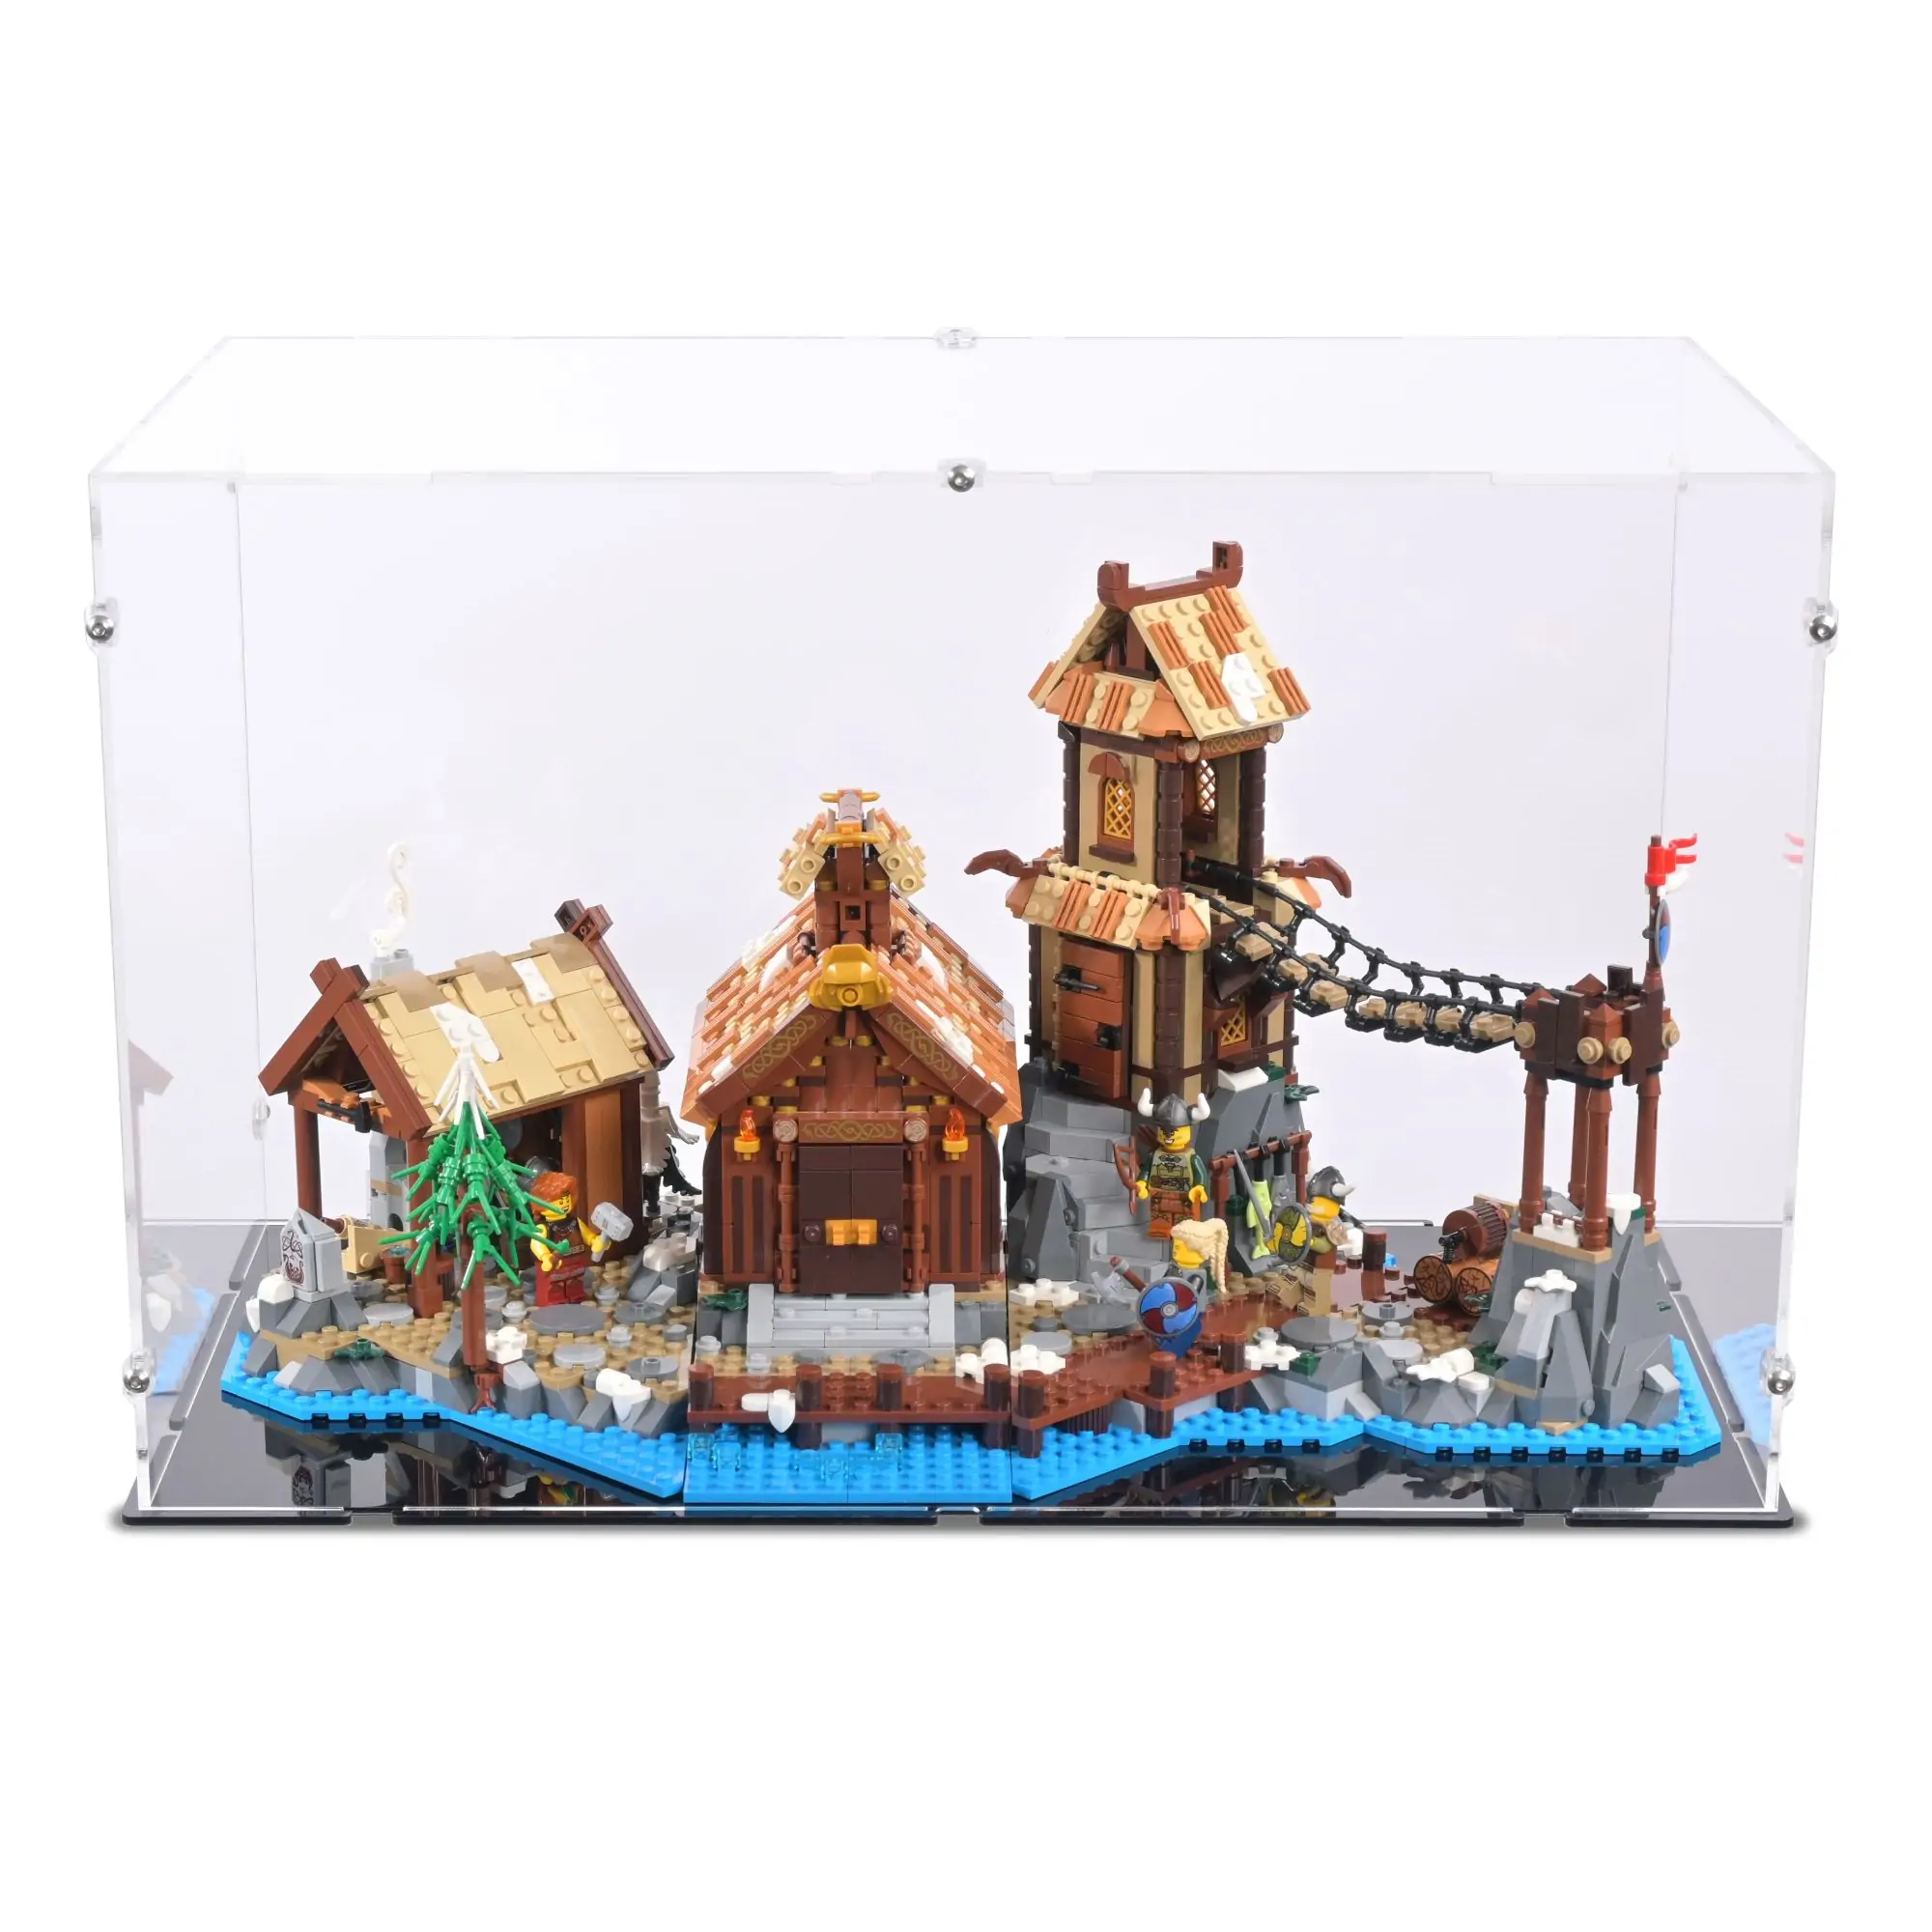 Lego Viking Village Display Case (21343)